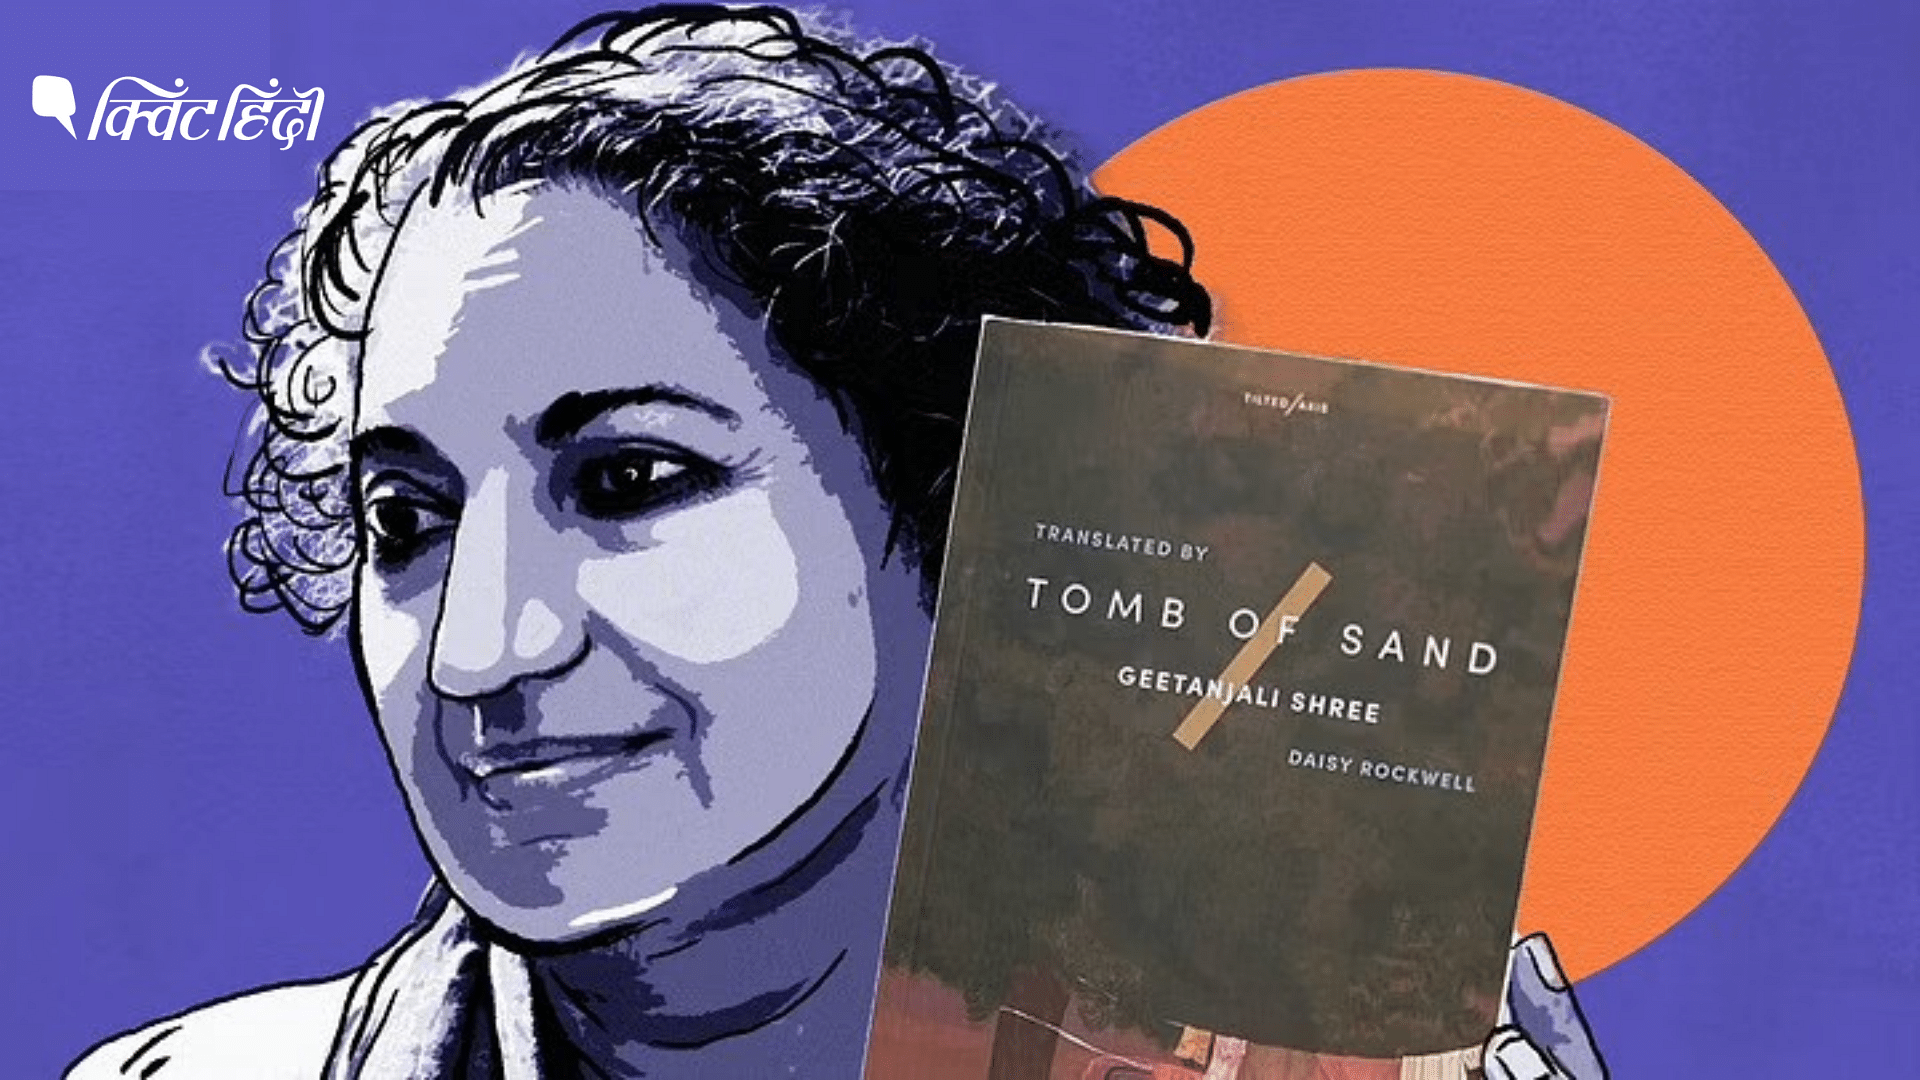 <div class="paragraphs"><p>Tomb of Sand geetanjali shree के उपन्यास रेत समाधि का अनुवाद है जिसे Booker पुरस्कार मिला है</p></div>